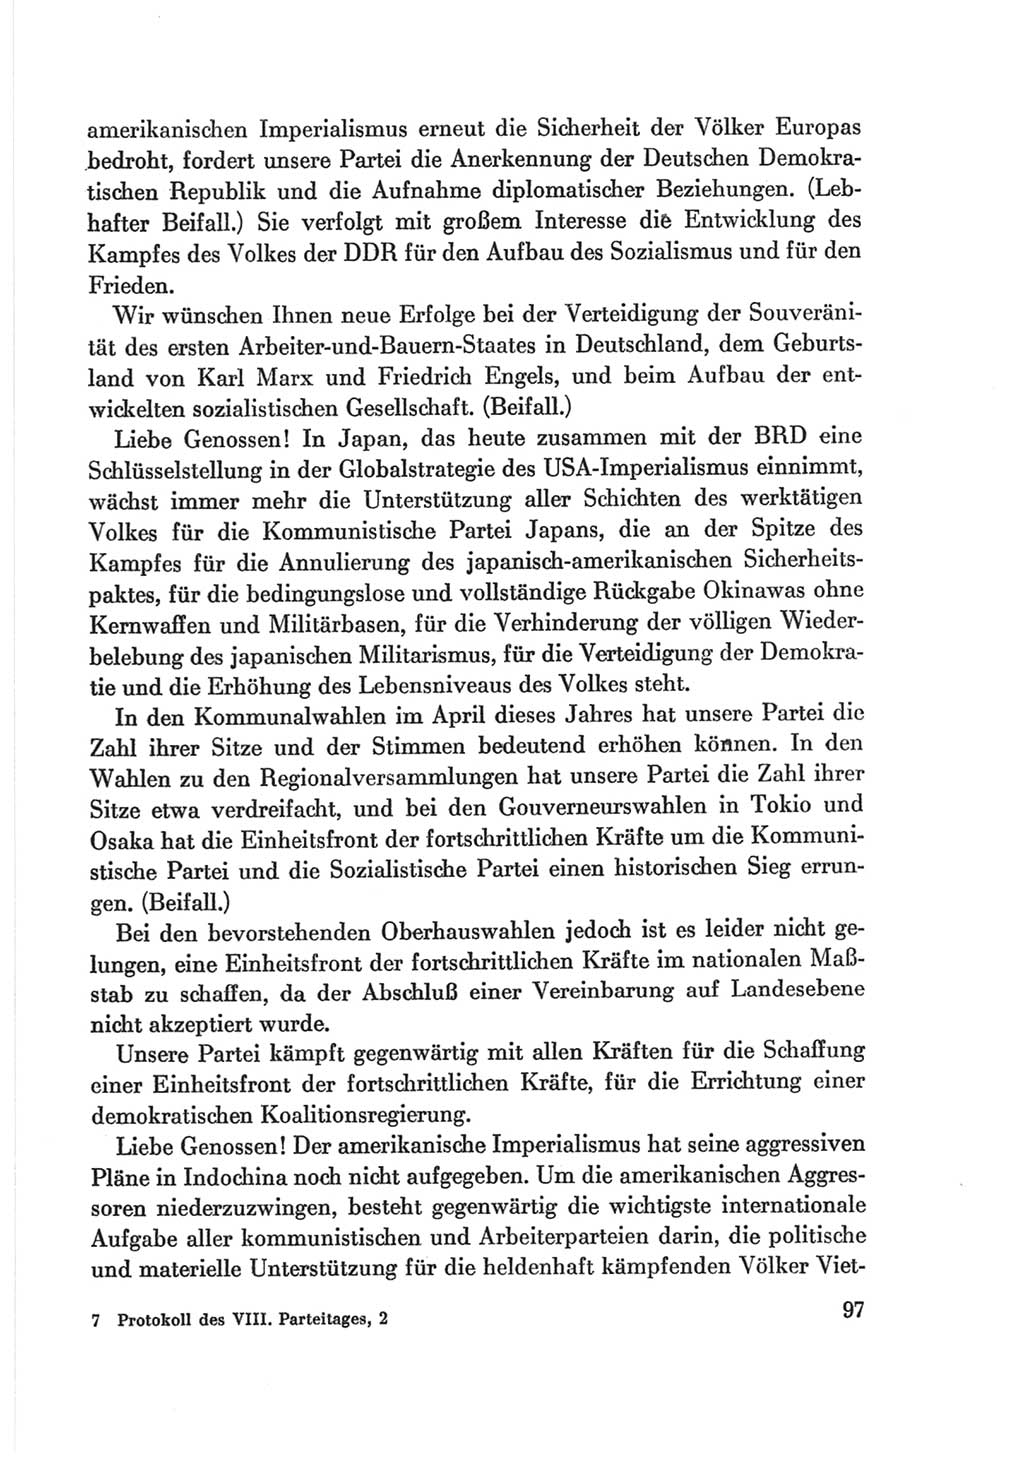 Protokoll der Verhandlungen des Ⅷ. Parteitages der Sozialistischen Einheitspartei Deutschlands (SED) [Deutsche Demokratische Republik (DDR)] 1971, Band 2, Seite 97 (Prot. Verh. Ⅷ. PT SED DDR 1971, Bd. 2, S. 97)